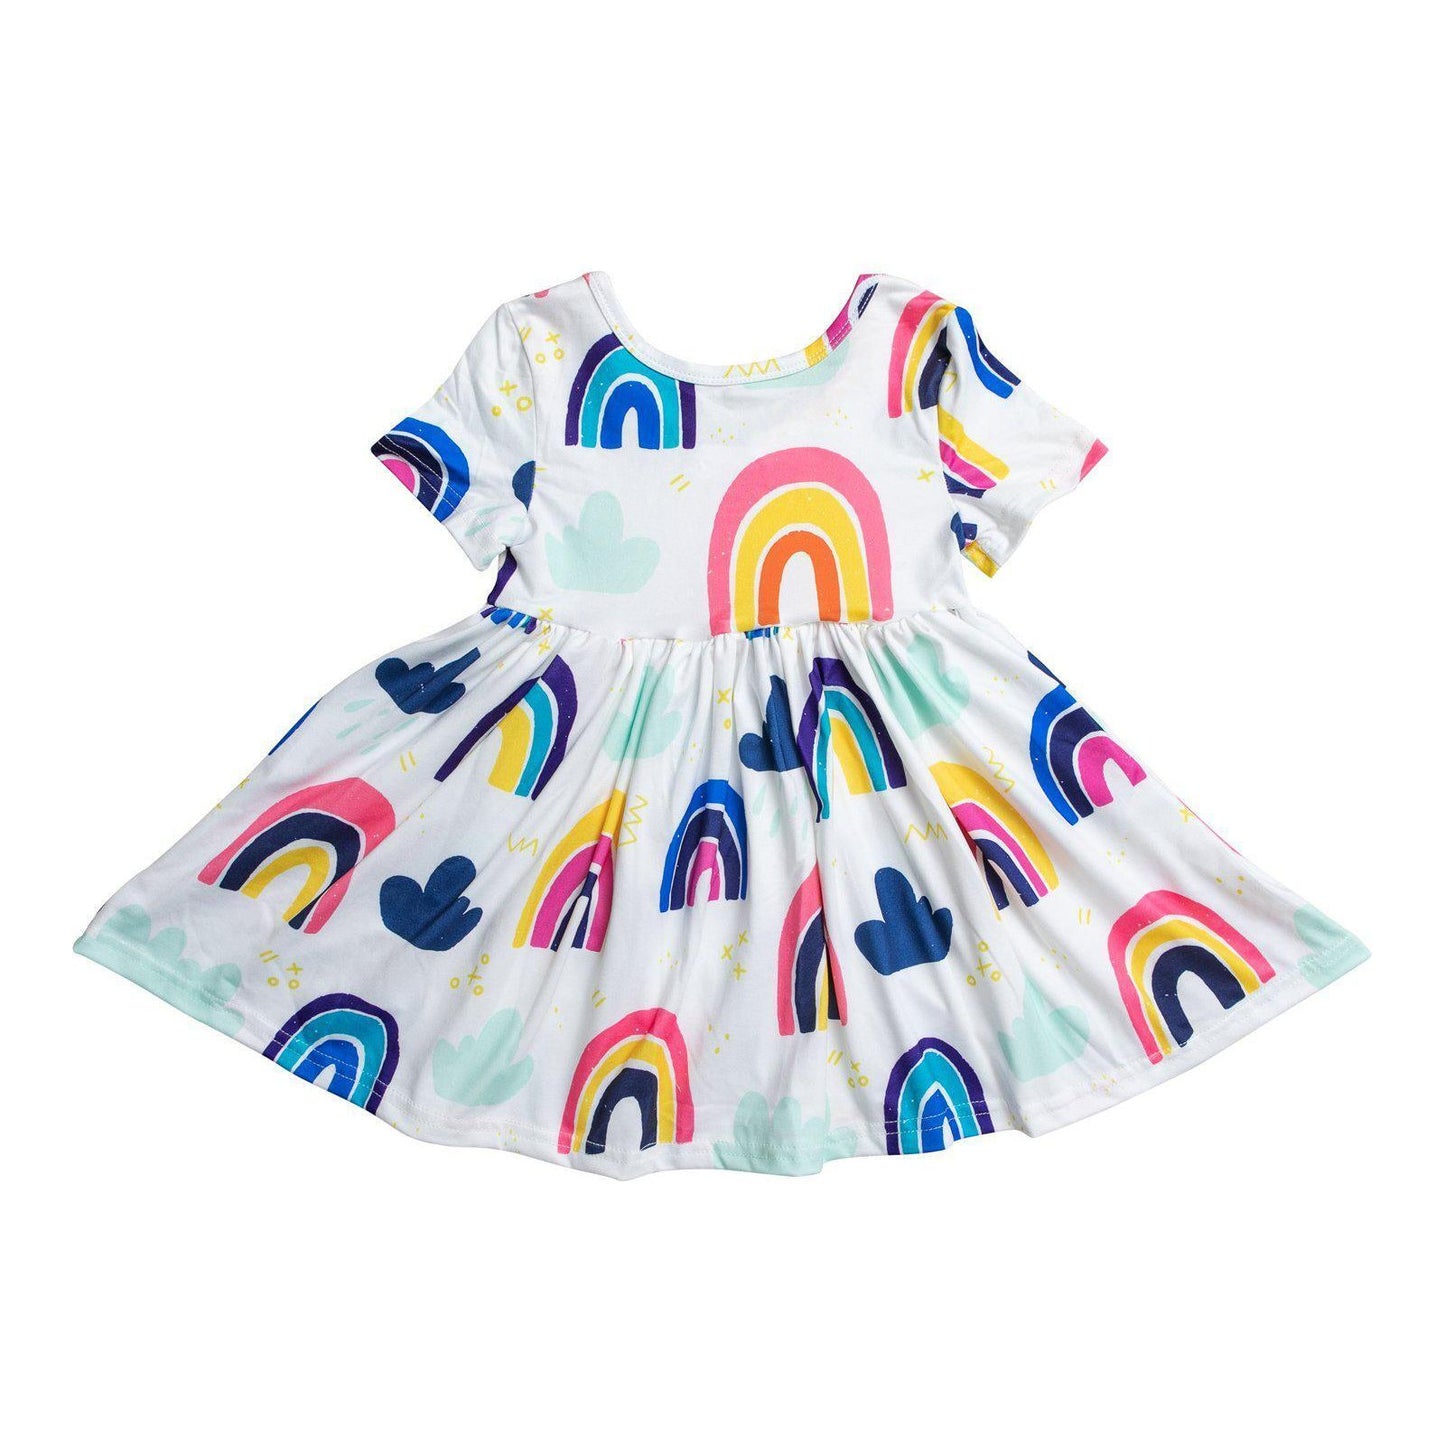 Rainy Day S/S Twirl Dress